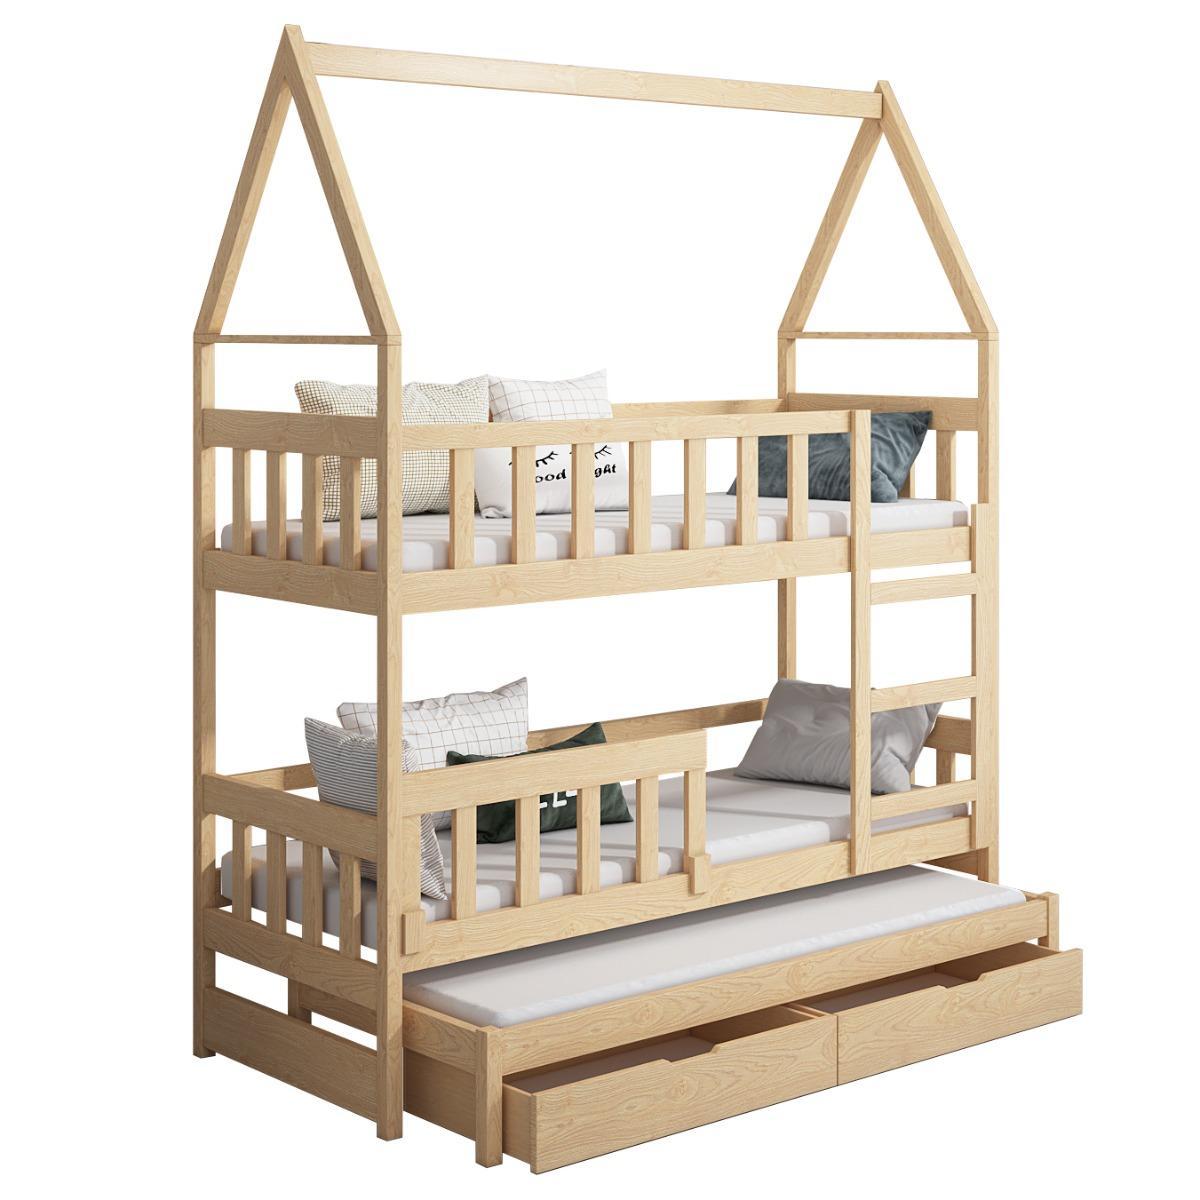 Łóżko piętrowe DOMEK drewno naturalne miejsce do spania dla 3 osób + materace sprężynowe 180x75 cm + barierka dolna do pokoju dziecka 5 Full Screen